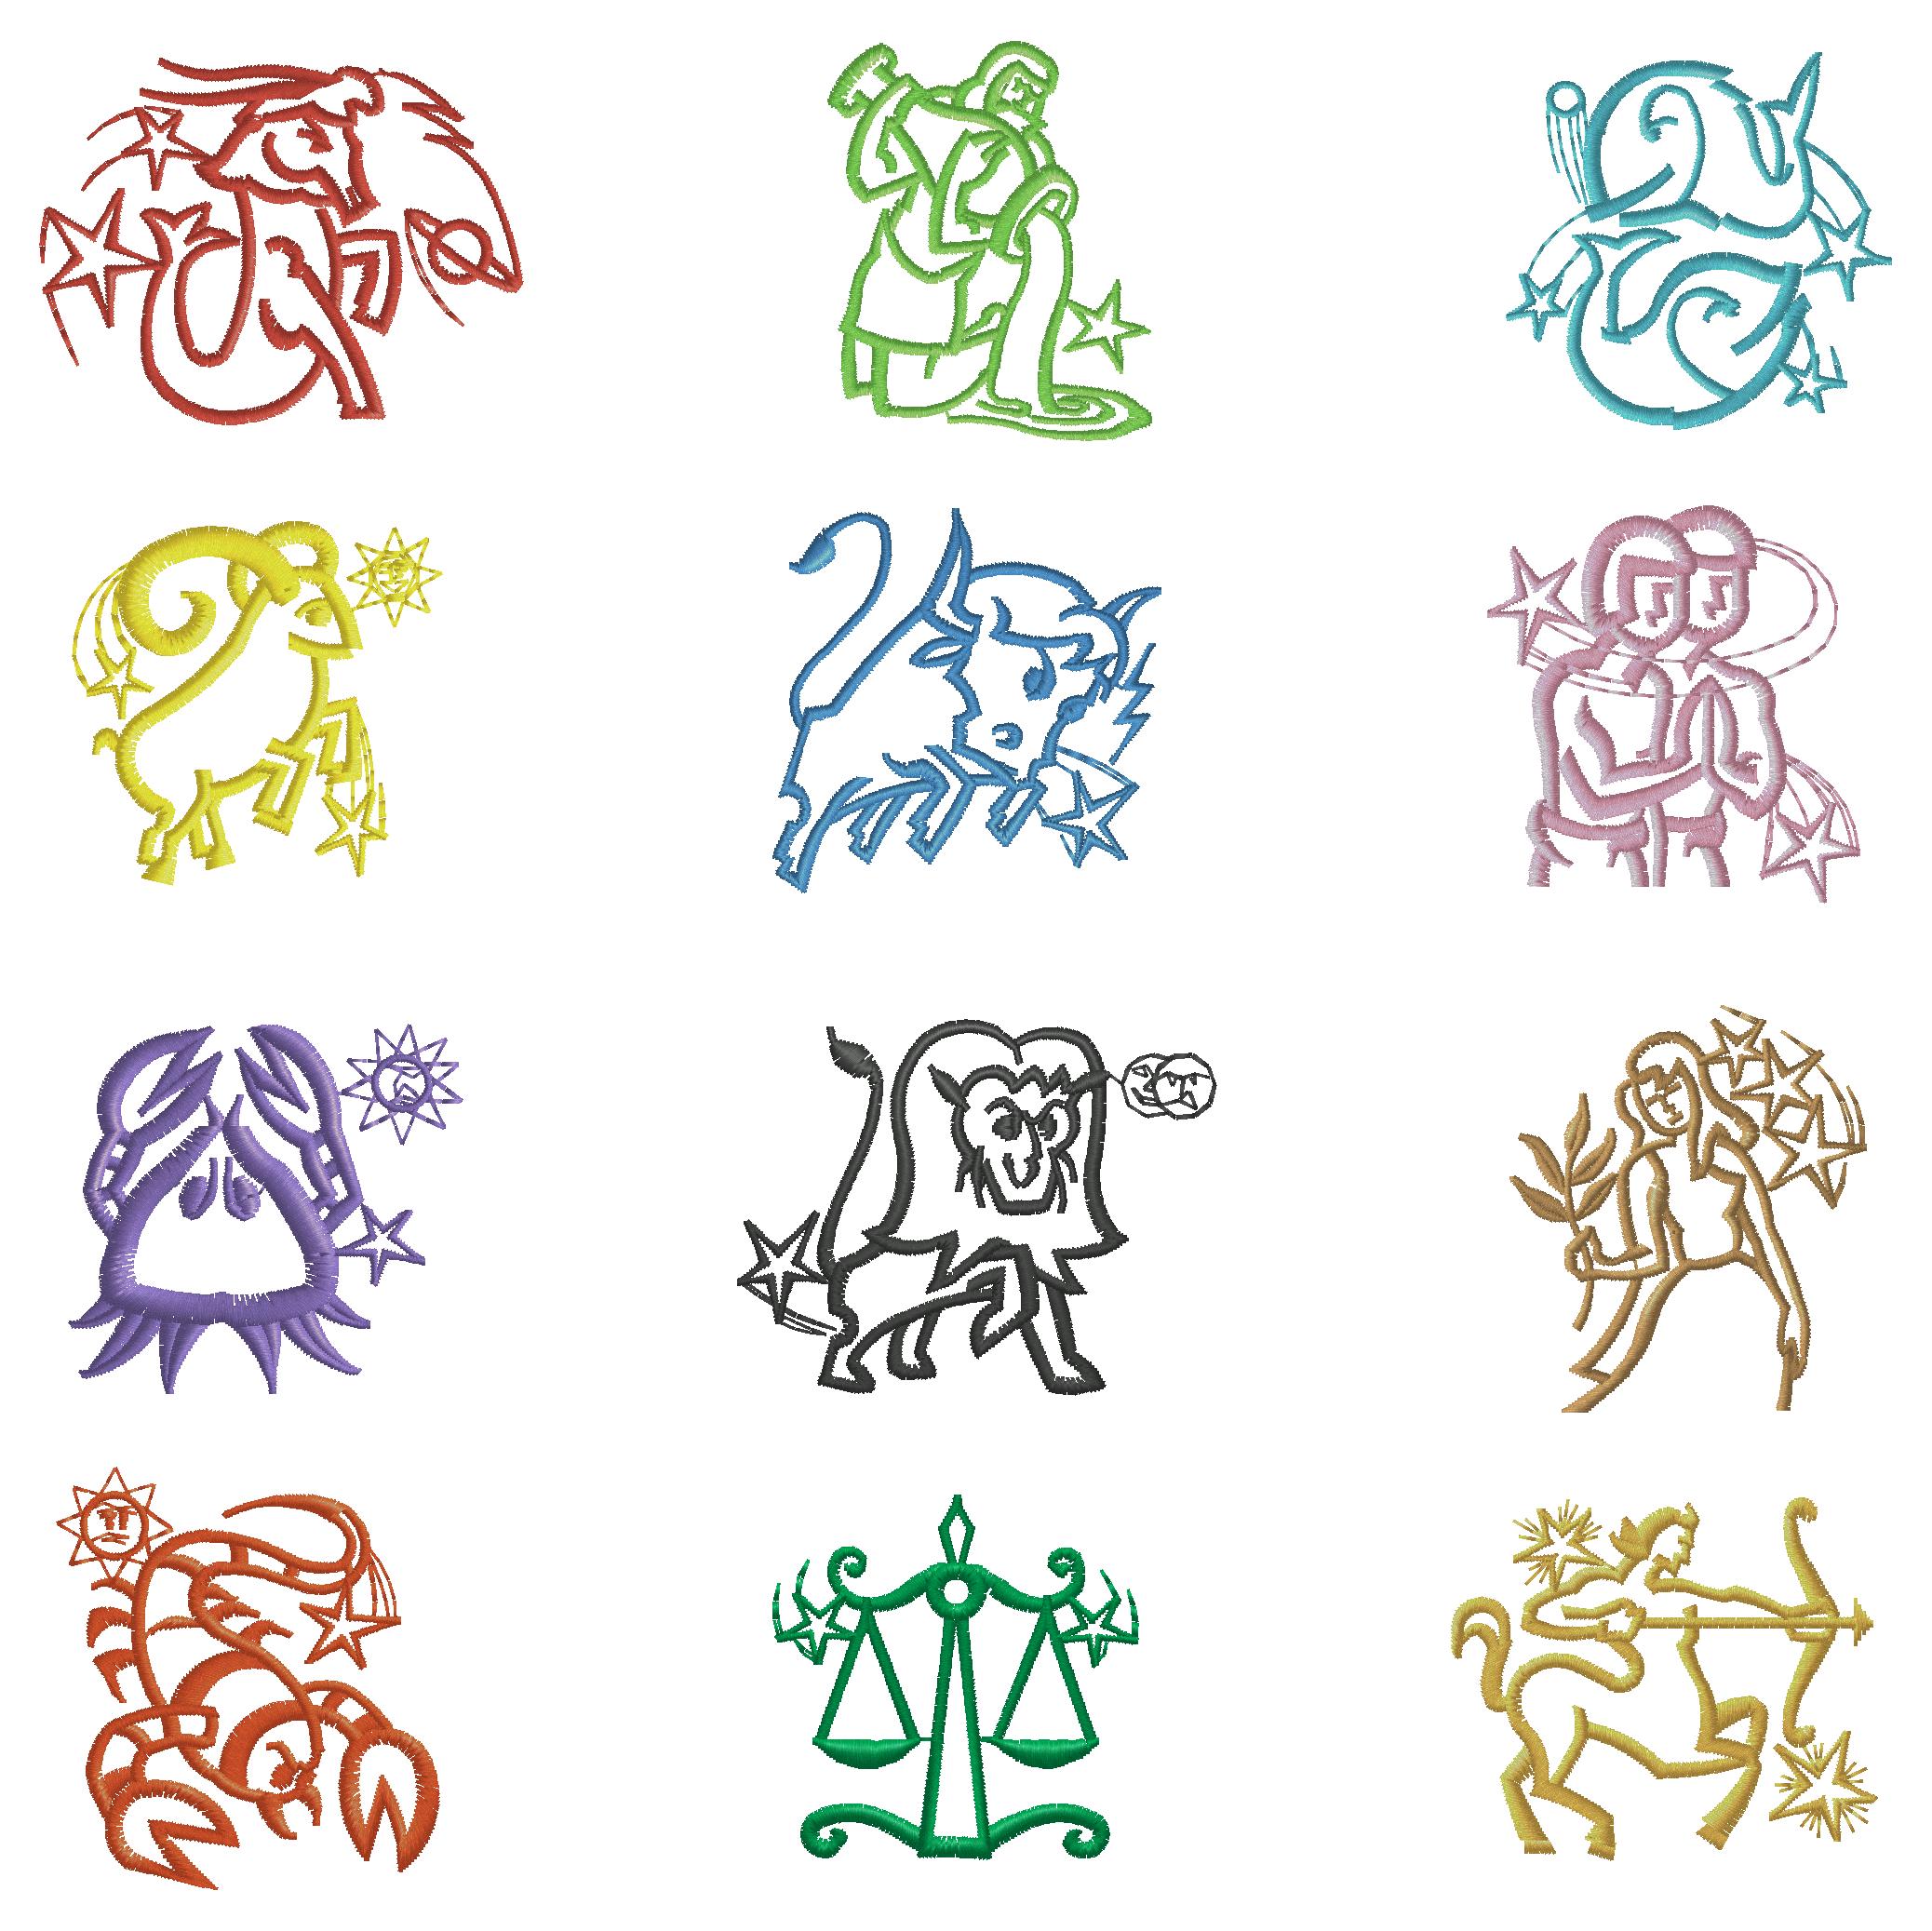 Zodiac_symbols.jpg